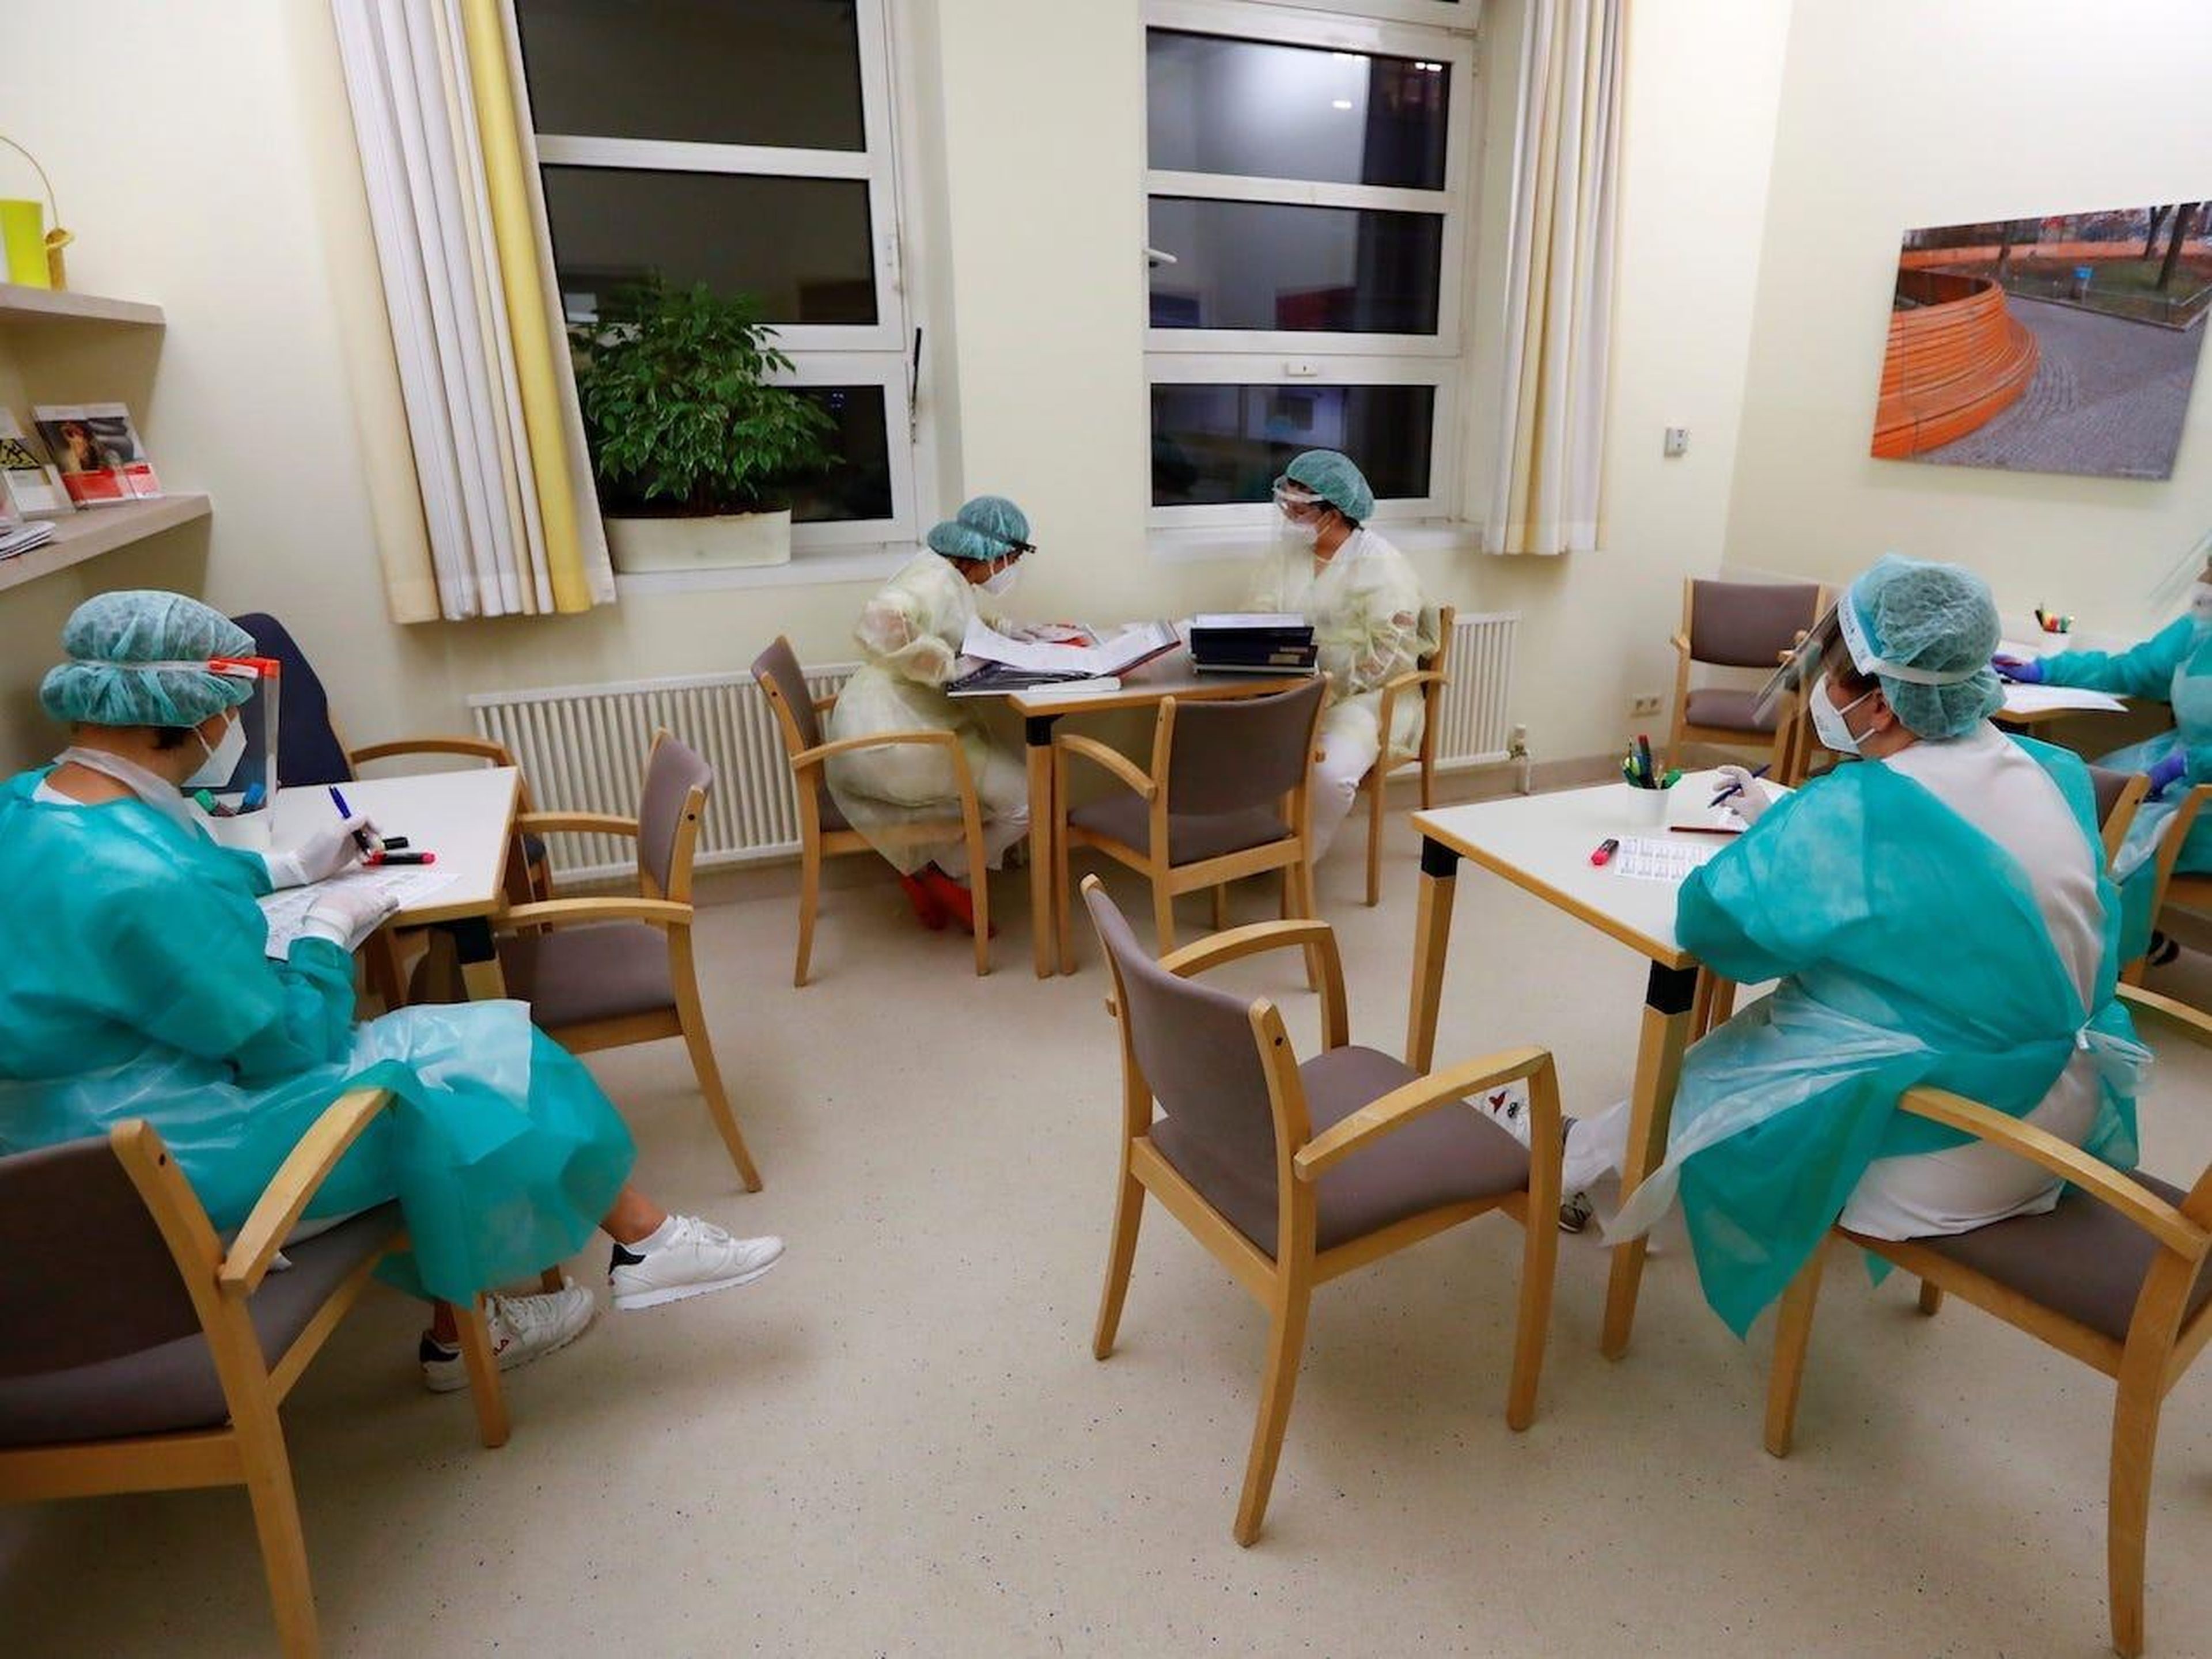 Las enfermeras tienen su turno diario para informar sobre el tratamiento médico de los pacientes que sufren del coronavirus en la sala de aislamiento COVID-19 del hospital DRK Kliniken Berlin Mitte en Berlín, Alemania, el 11 de noviembre de 2020.